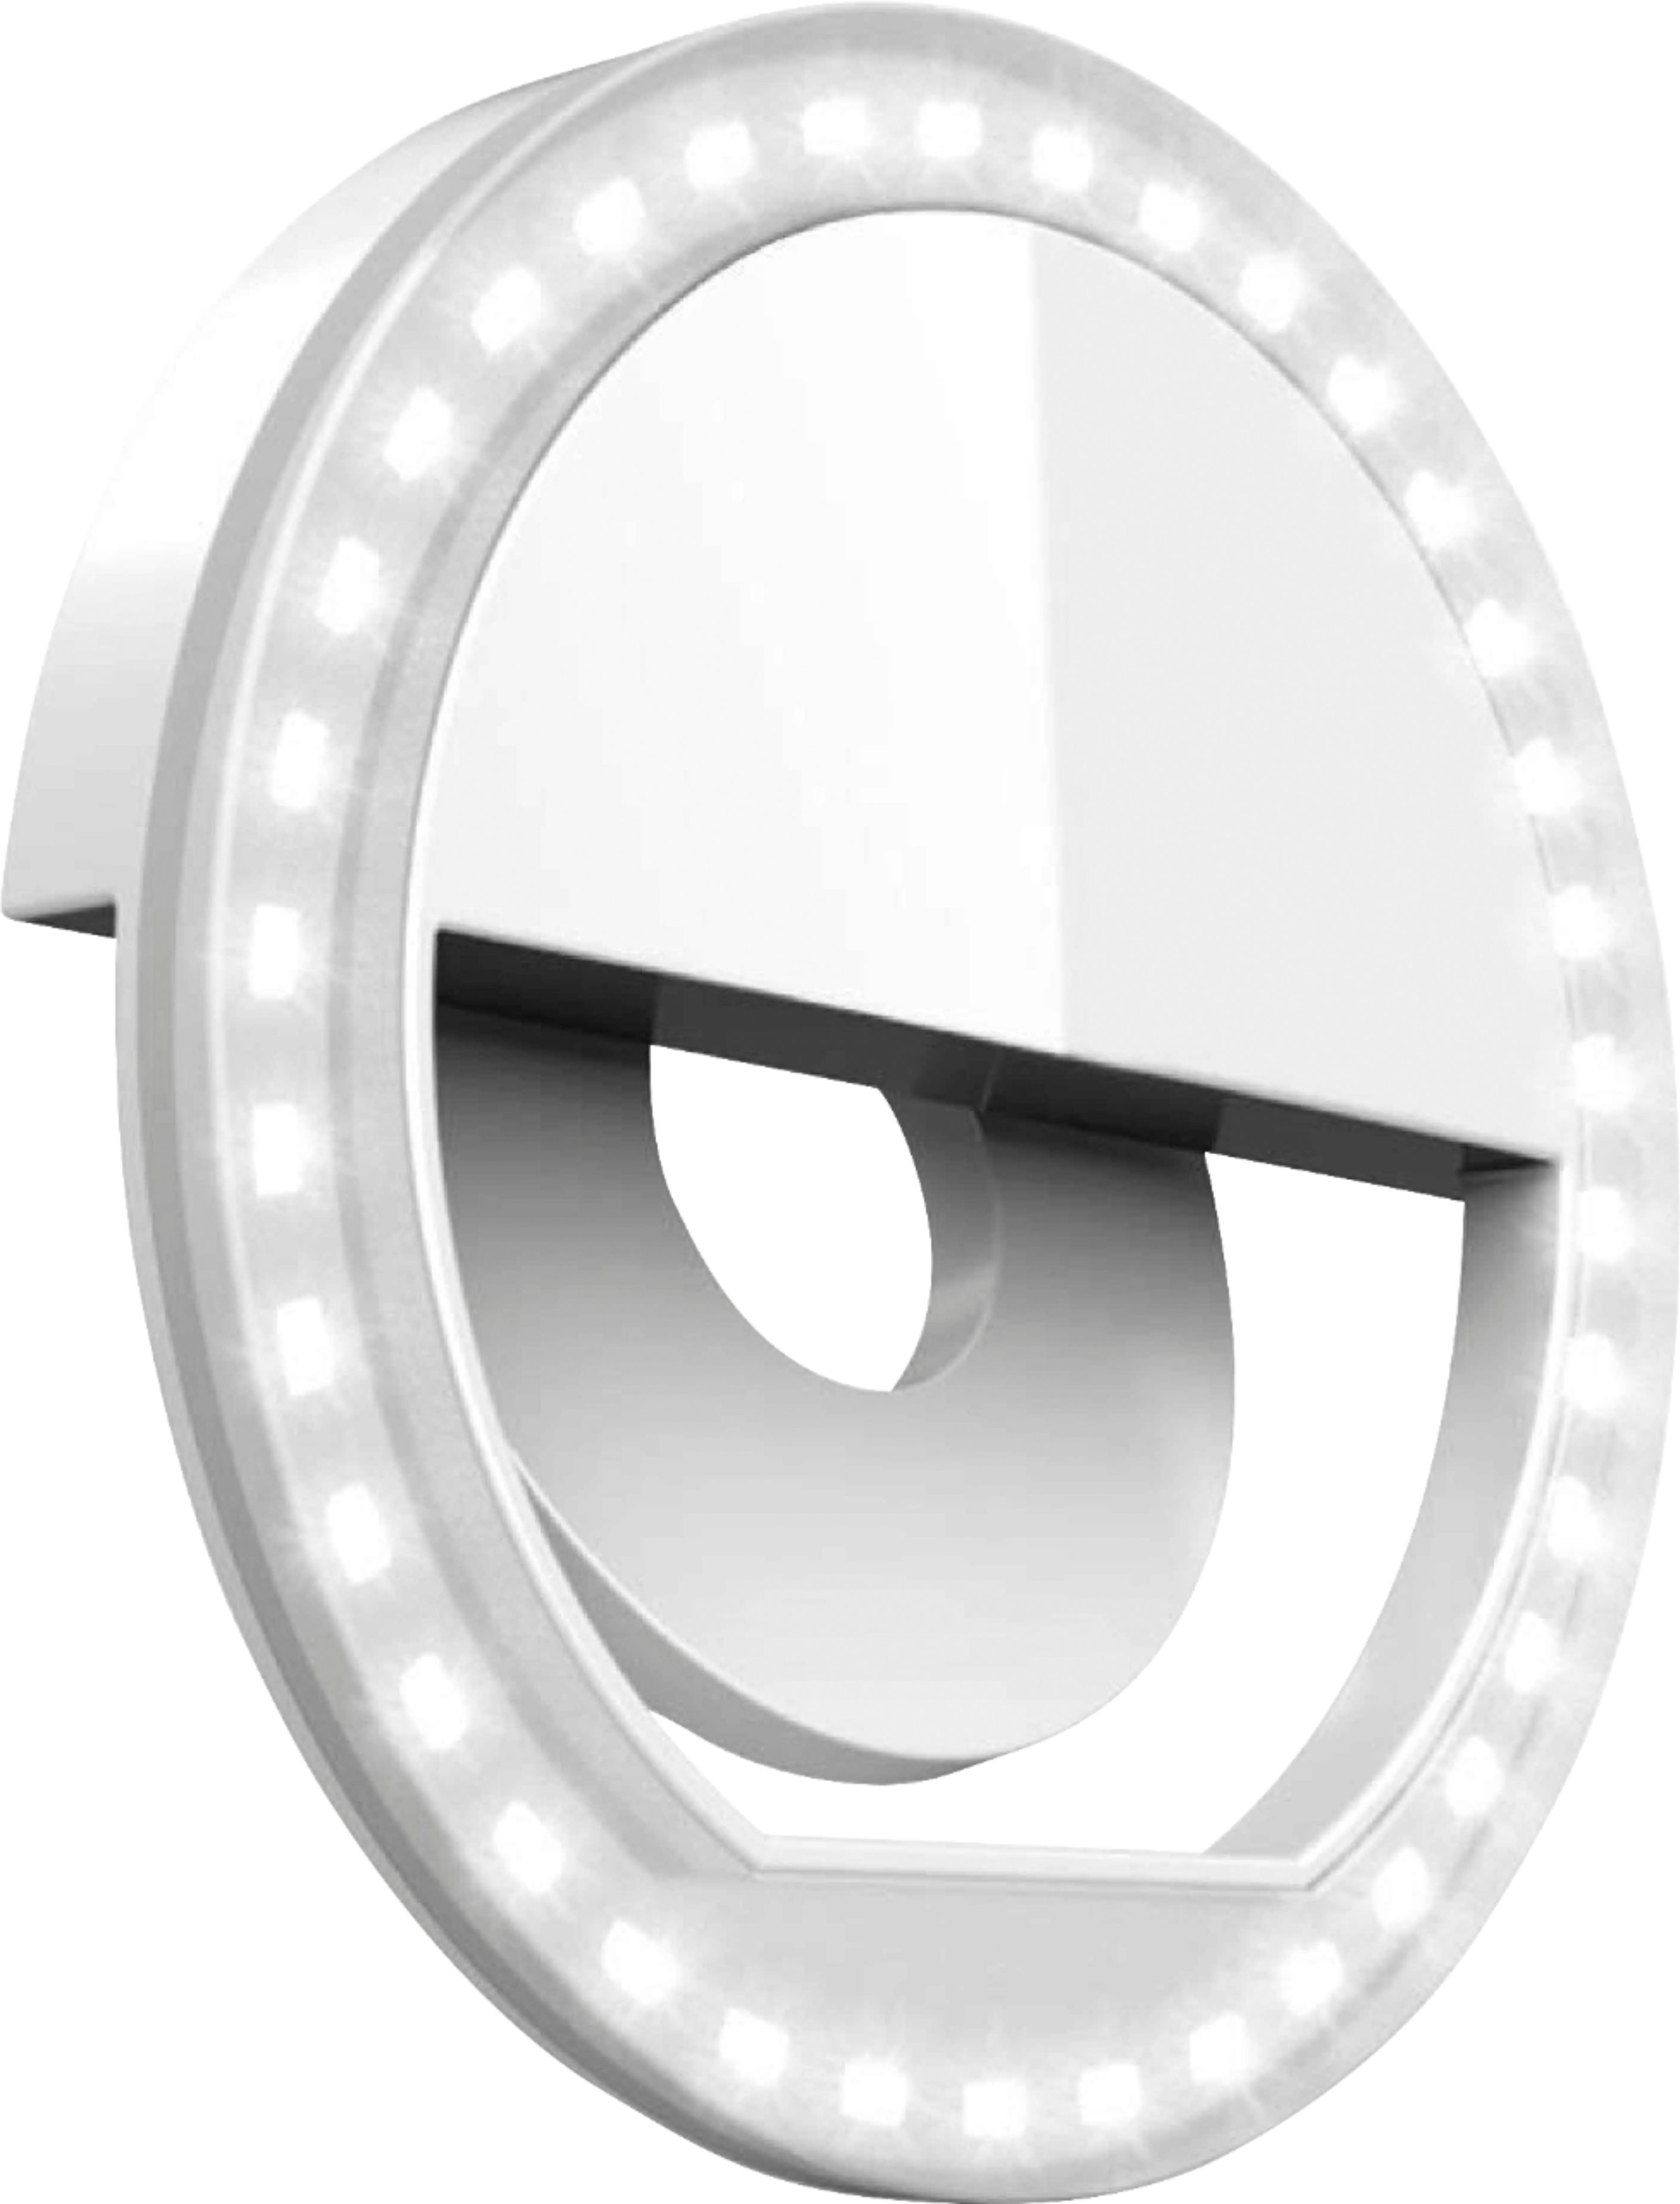 Bower Clip On LED Ring Light White BB-CL36W - Best Buy | Best Buy U.S.